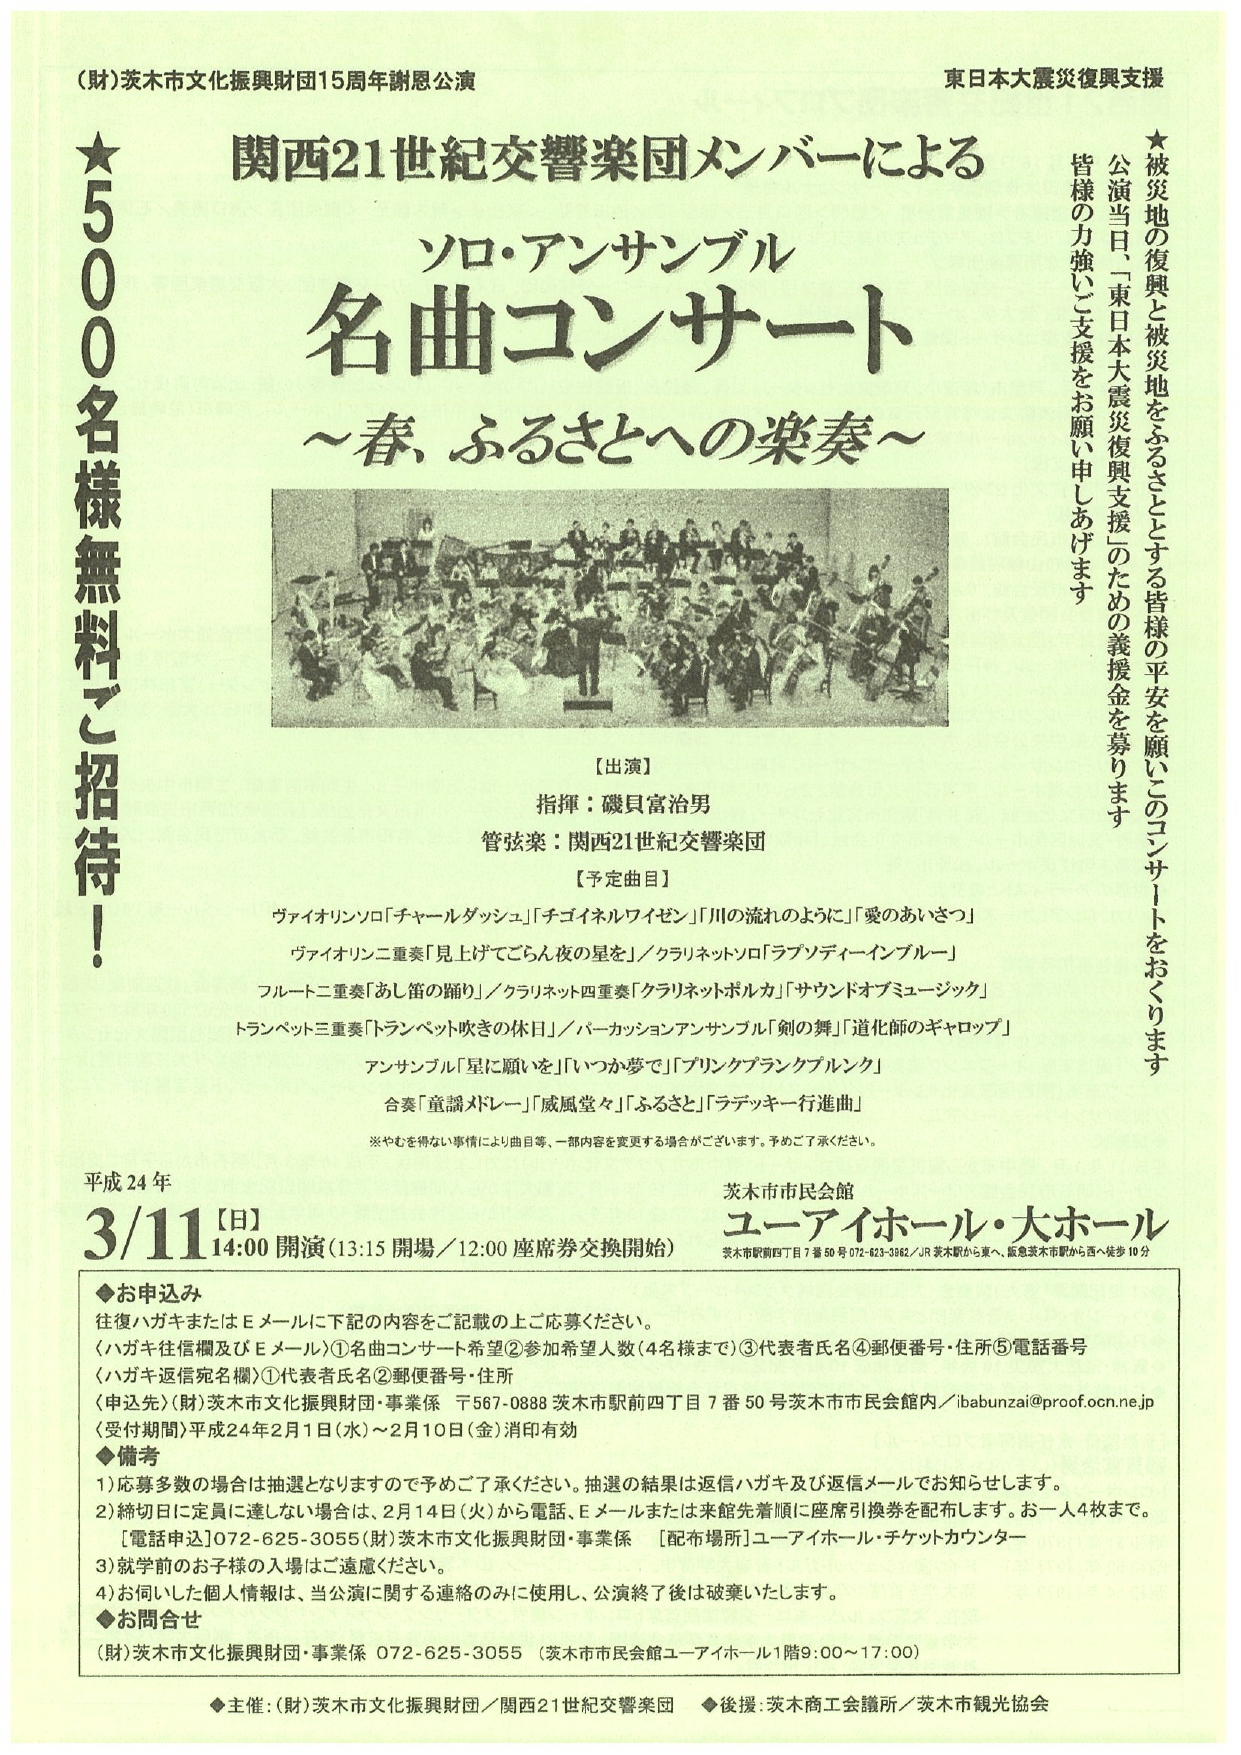 財団15周年謝恩公演／東日本大震災復興支援 関西21世紀交響楽団のメンバーによるソロ・アンサンブル 「名曲コンサート」～春、ふるさとへの楽奏～